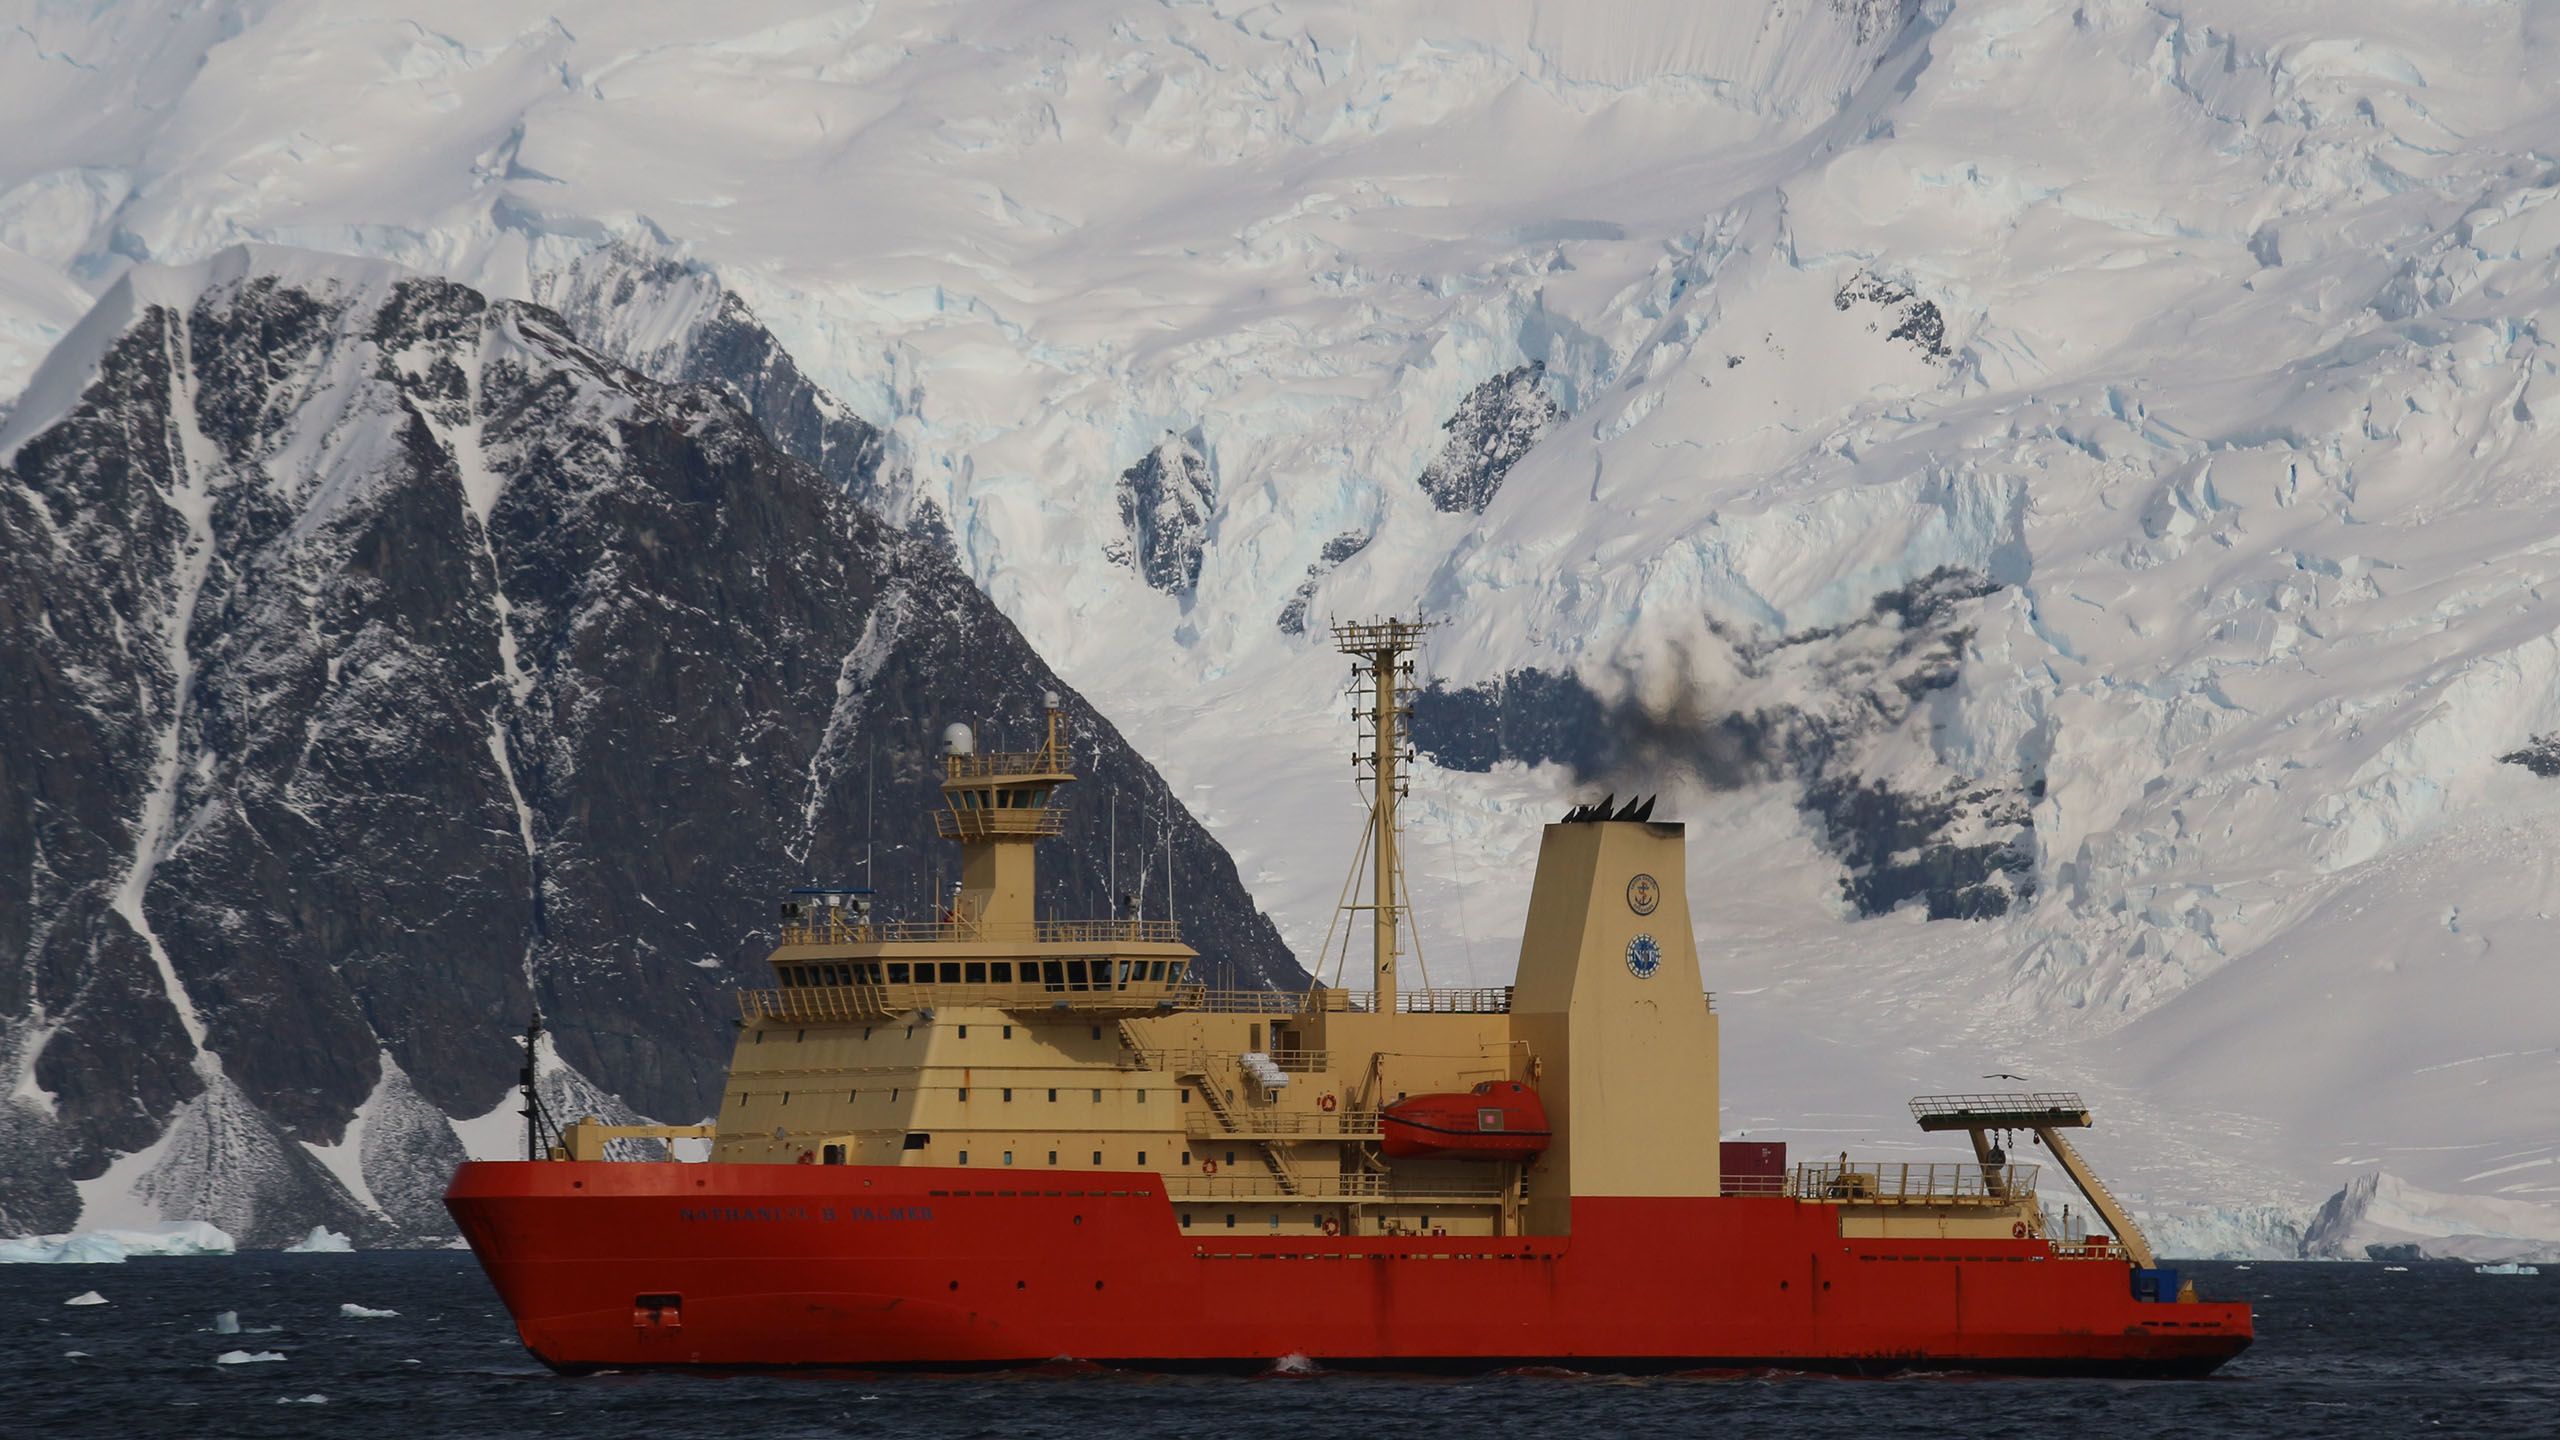 US ship 'Palmer' at Antarctica. Credit Lloyd Peck